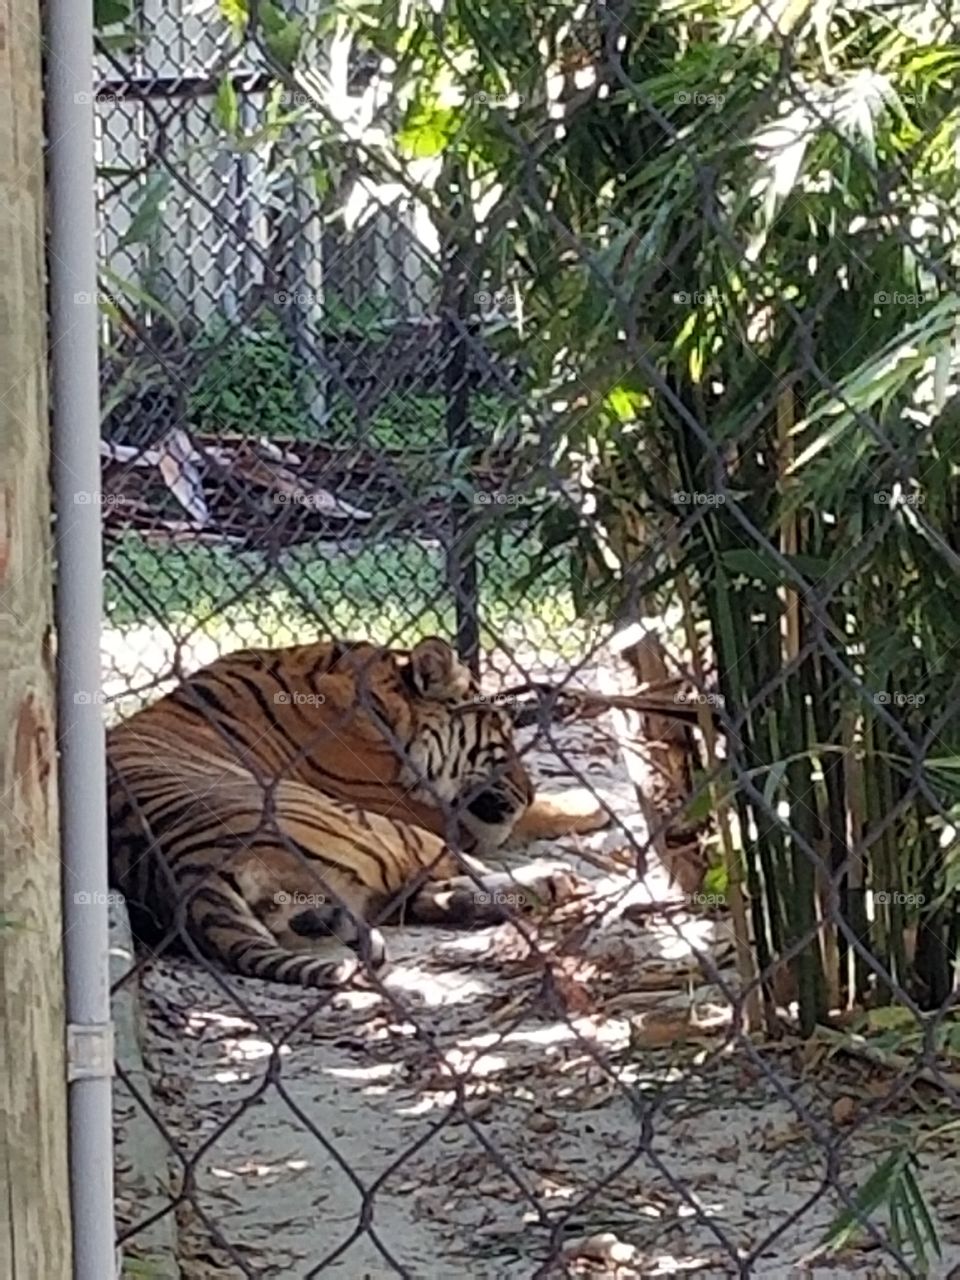 Beautiful tiger enjoying a nap